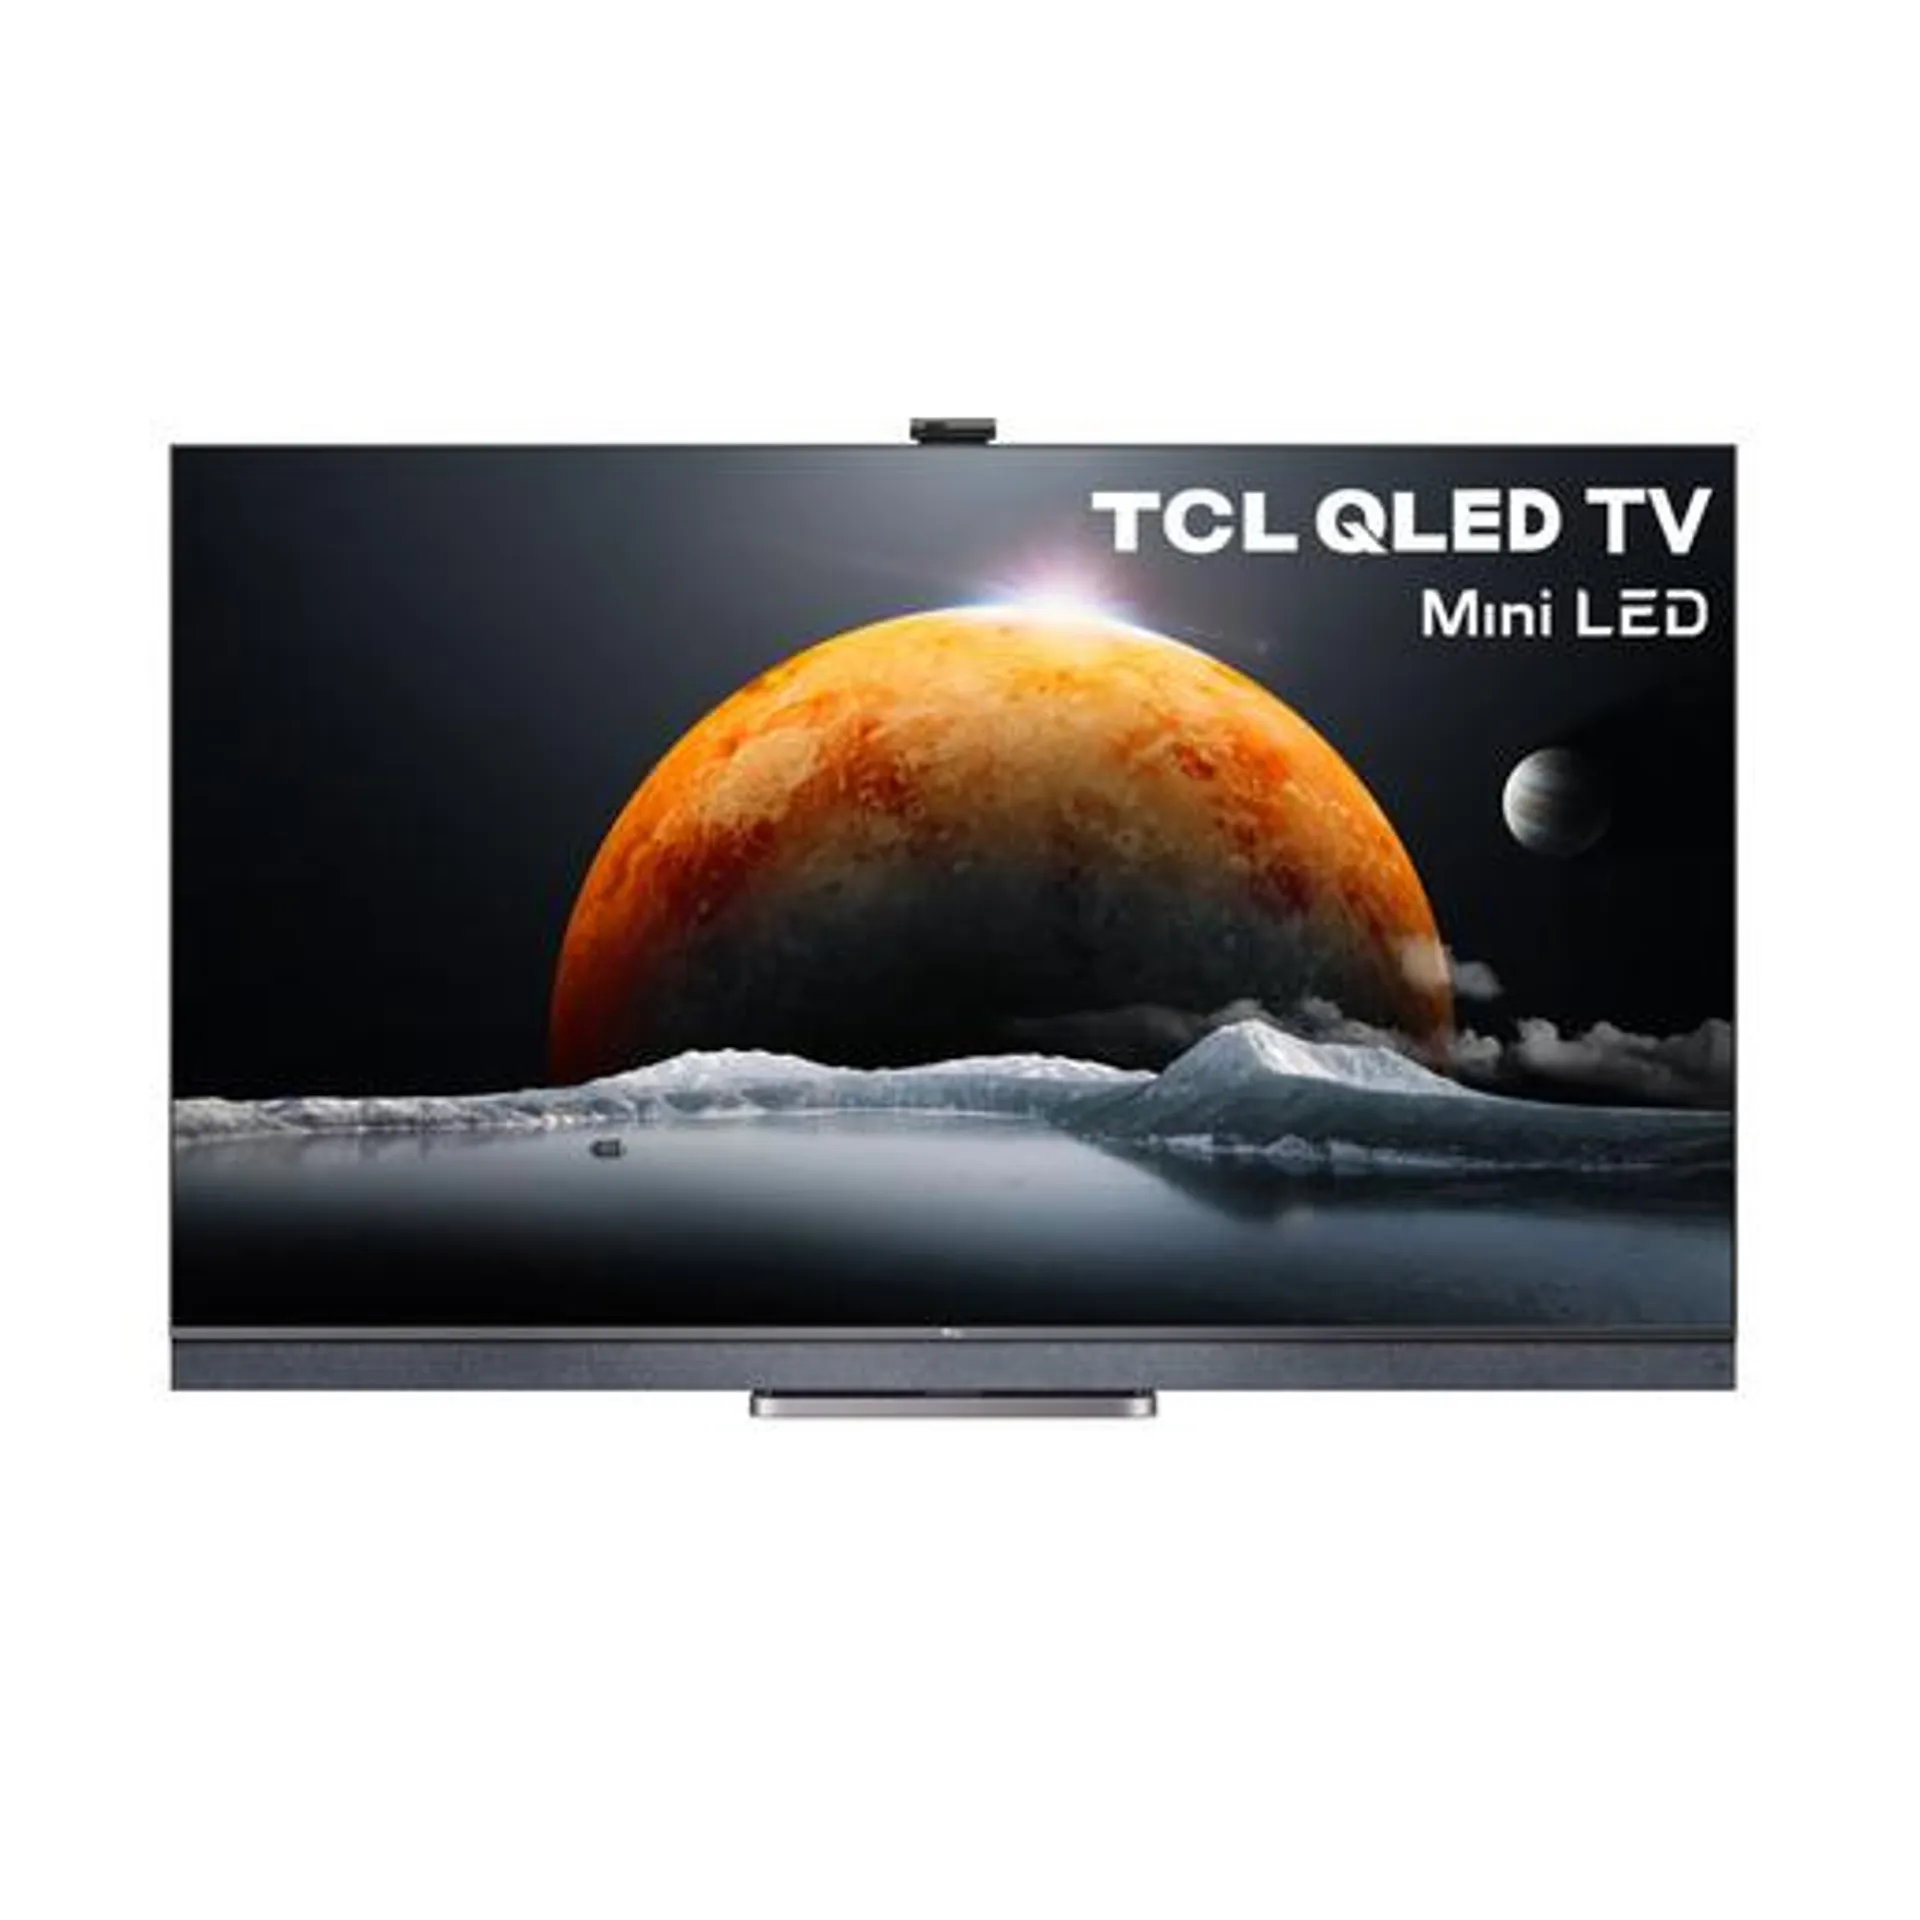 SMART QLED MINI LED GOOGLE TV TCL 65 PULGADAS 4K UHD L65C825